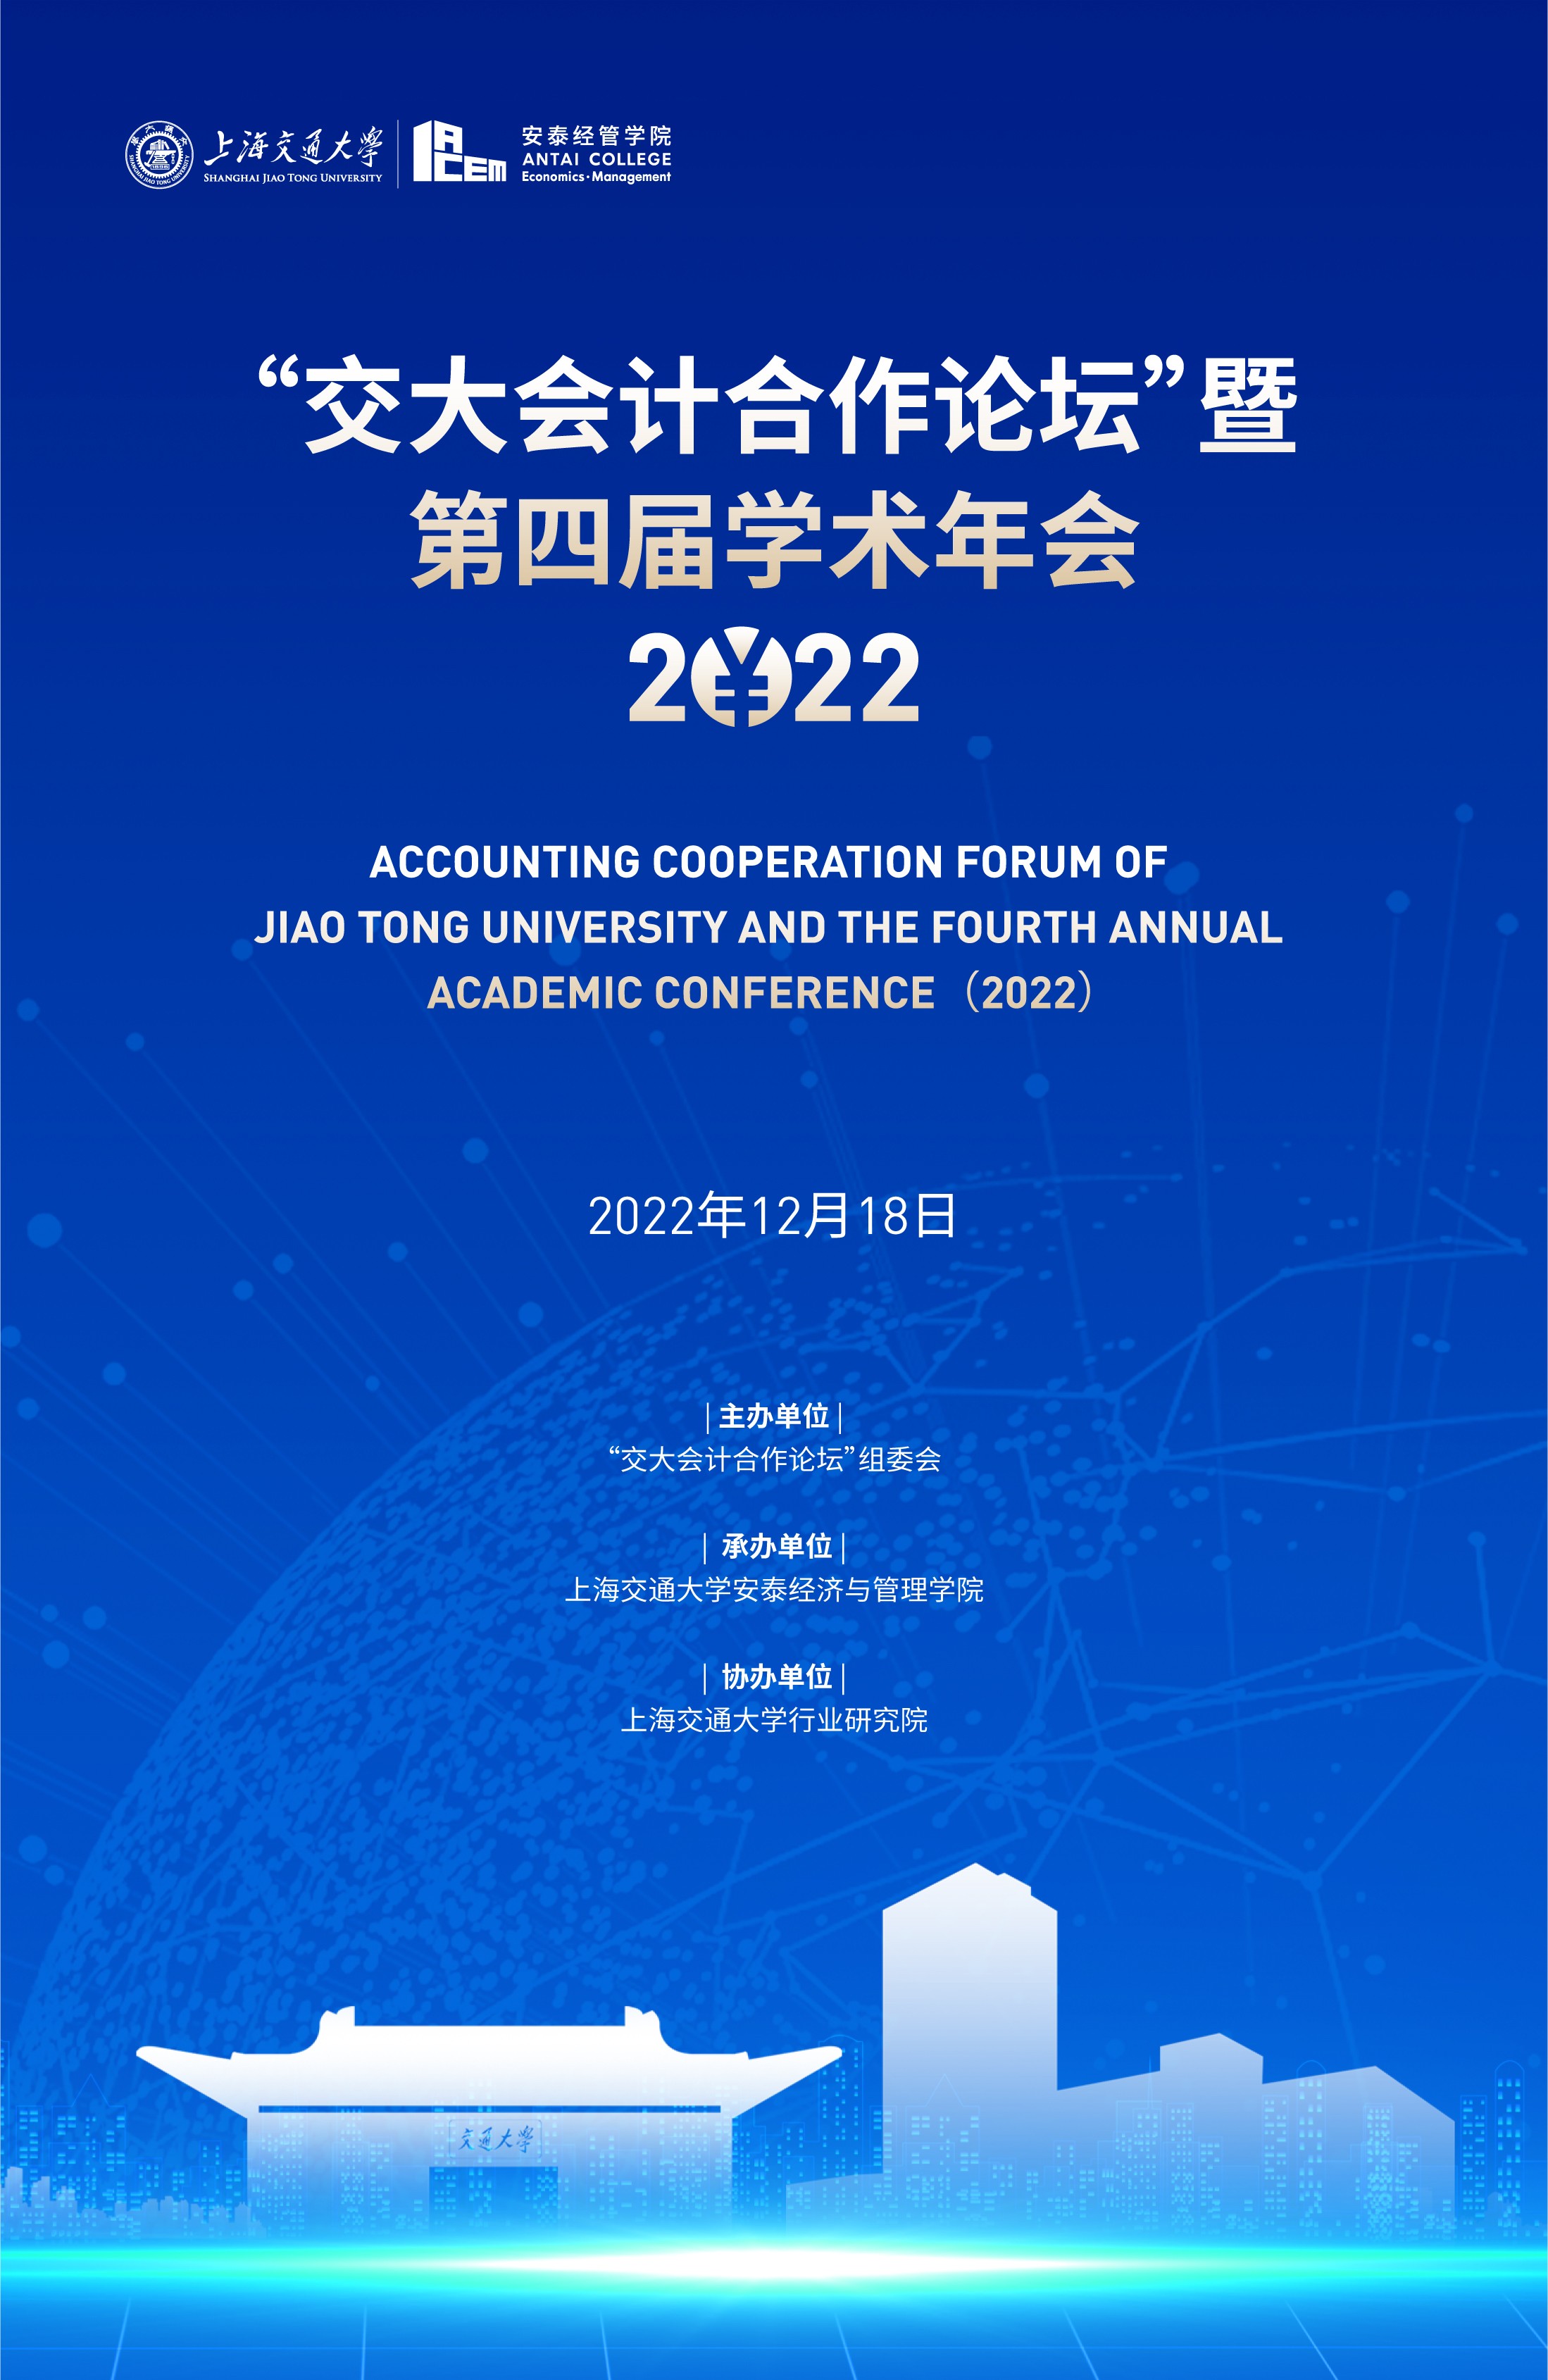 交大会计合作论坛”暨第四届学术年会（2022）-上海交通大学安泰经济与 